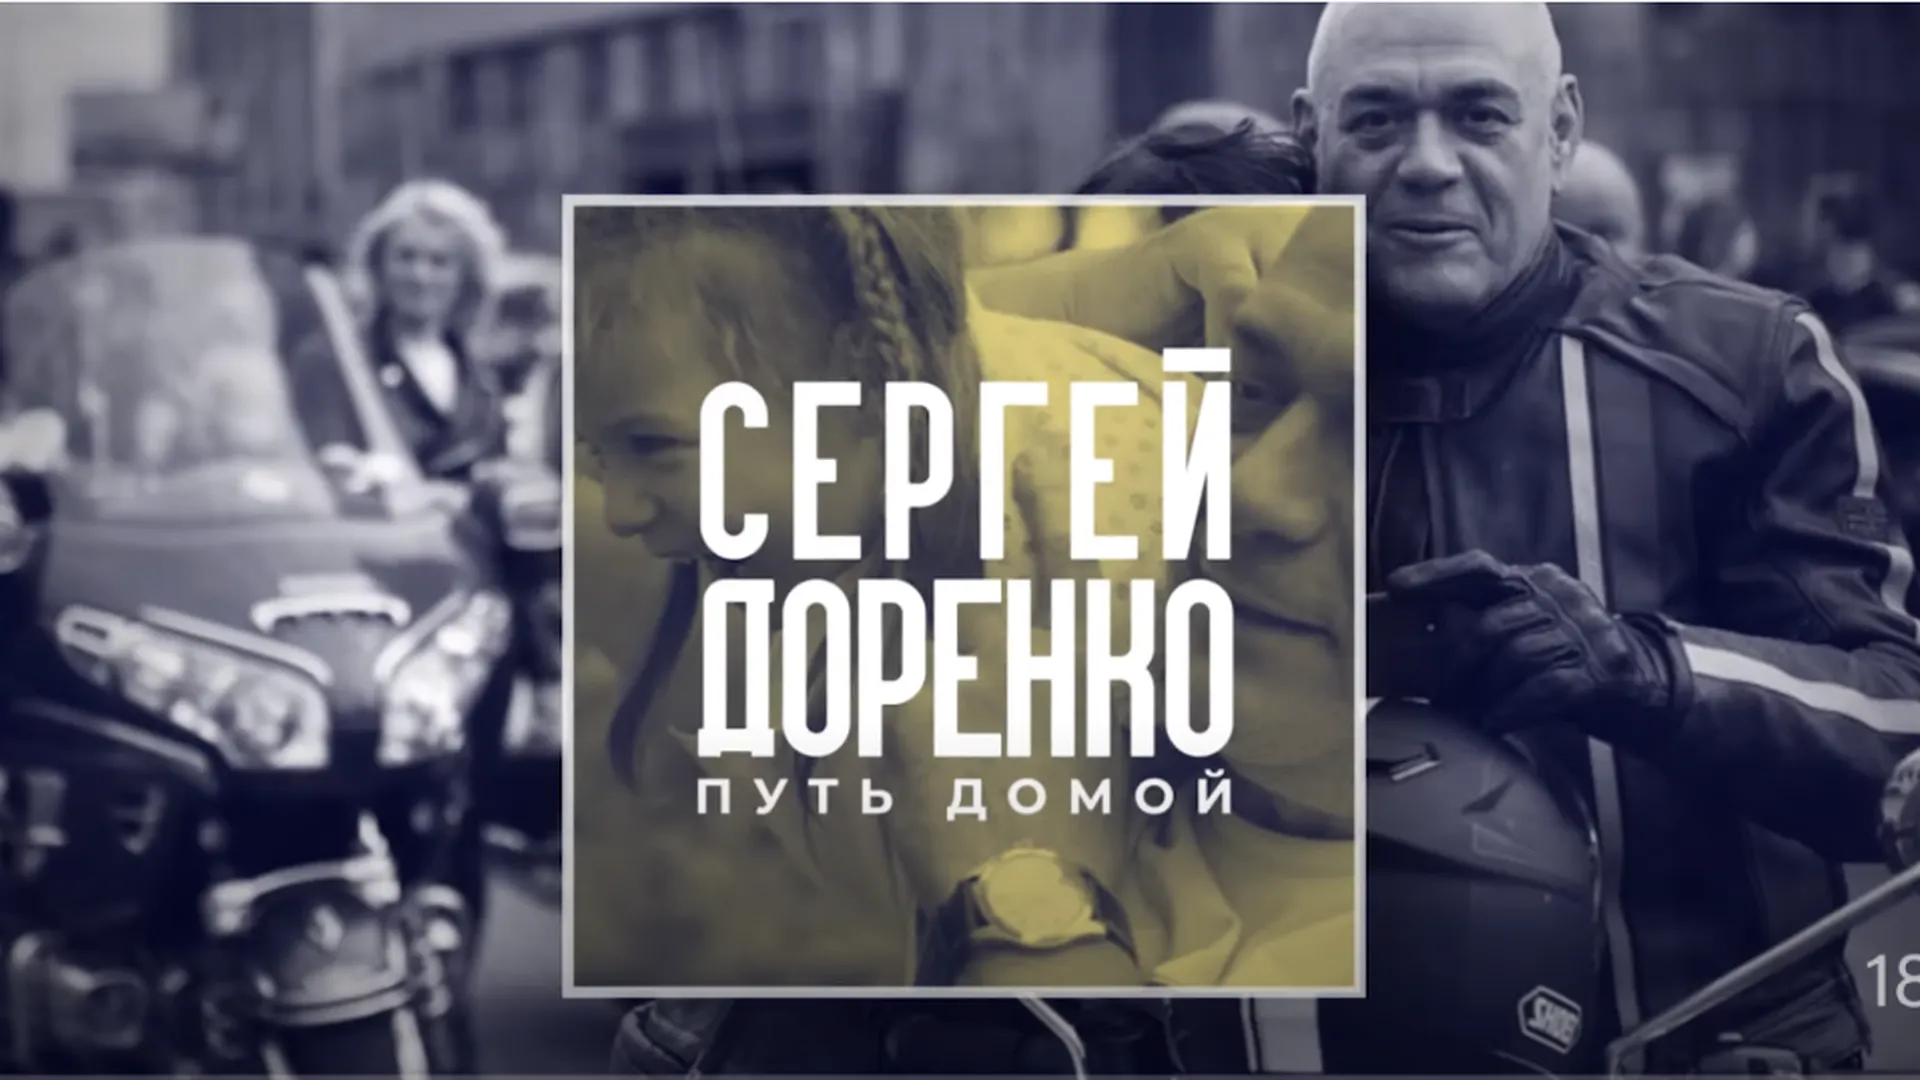 Вдова Сергея Доренко выпустила документальный фильм о муже в годовщину его смерти